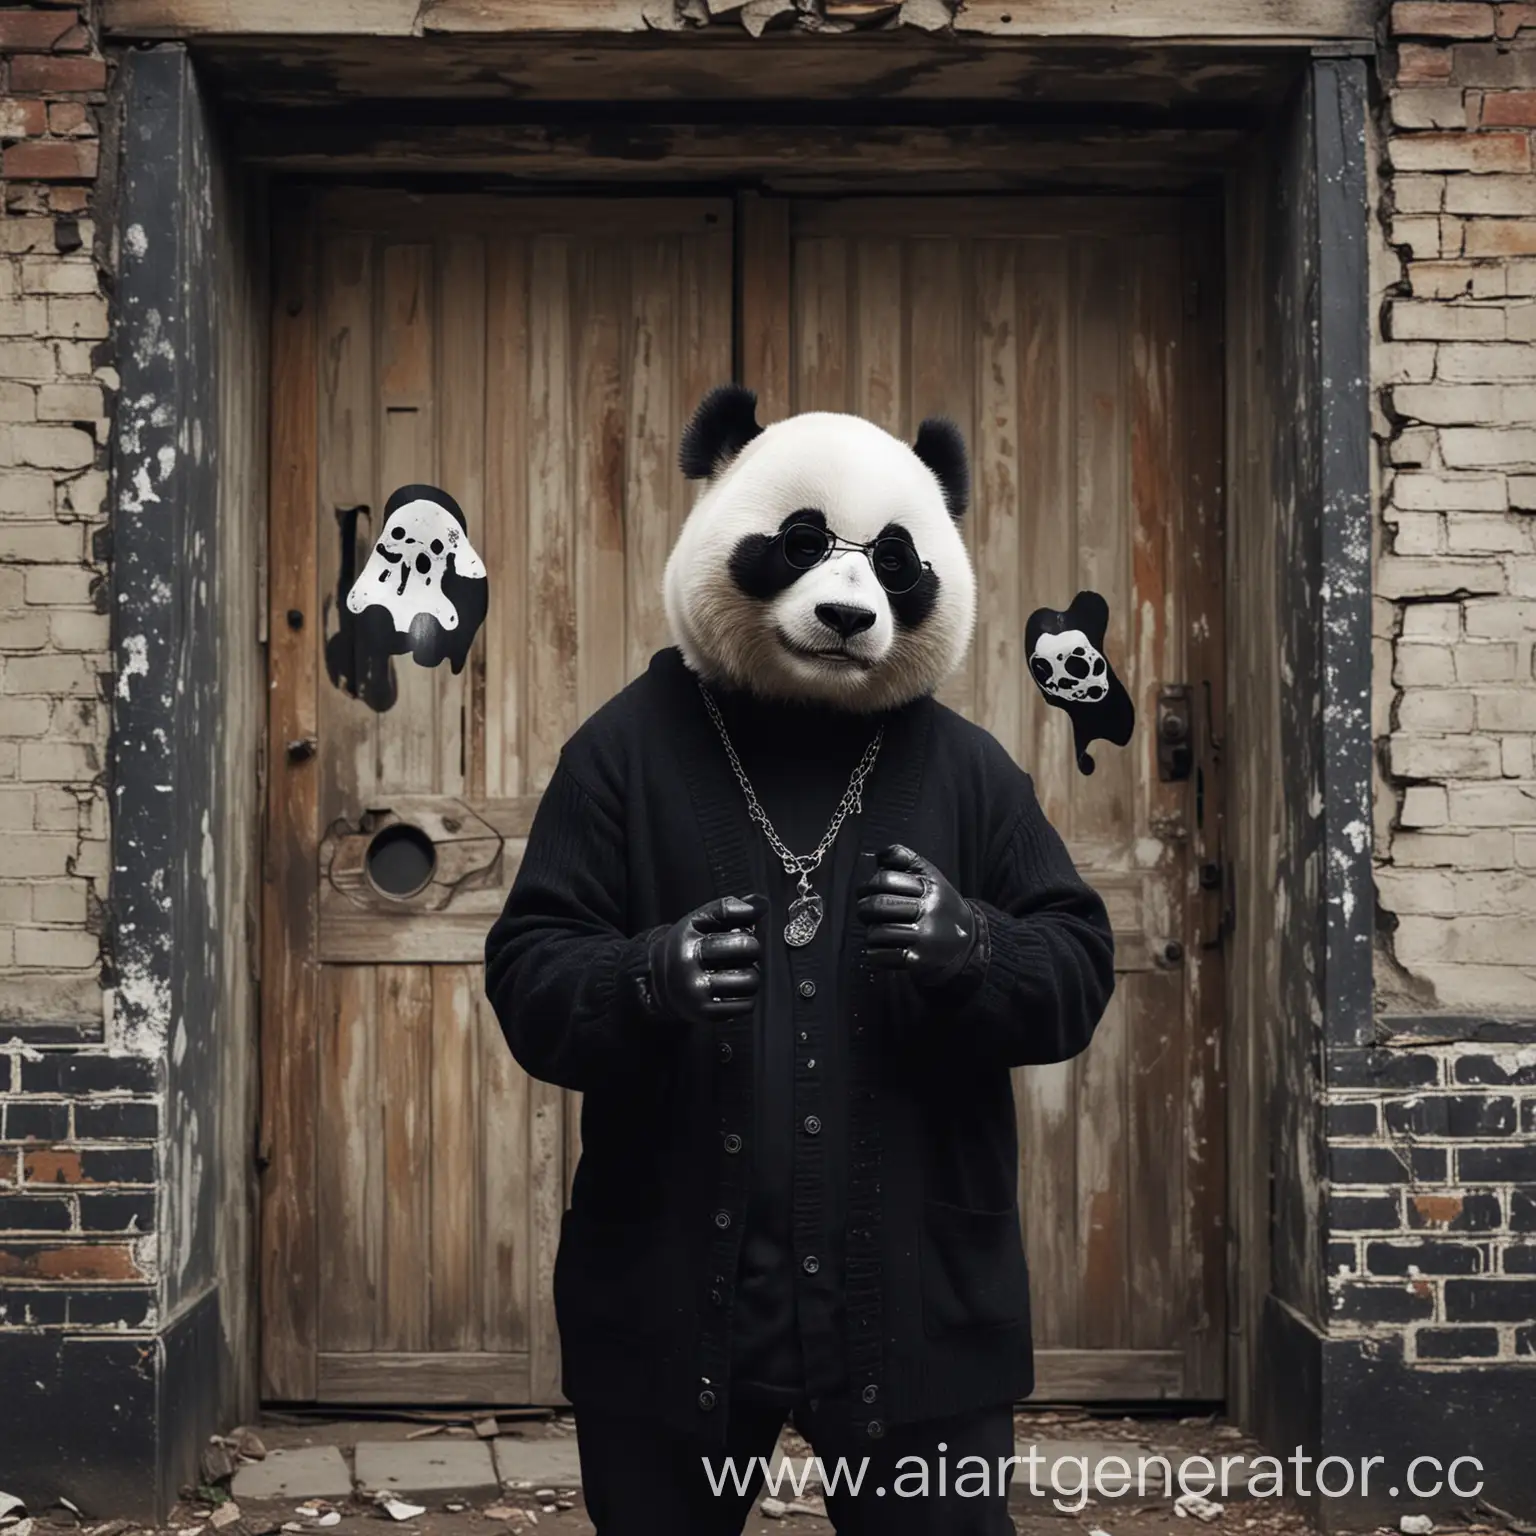 Панда в солнцезащитных очках и в чёрном кардигане, в старом здании держит в одной руке побитого  призрака, а во второй серебряный кастет с узором